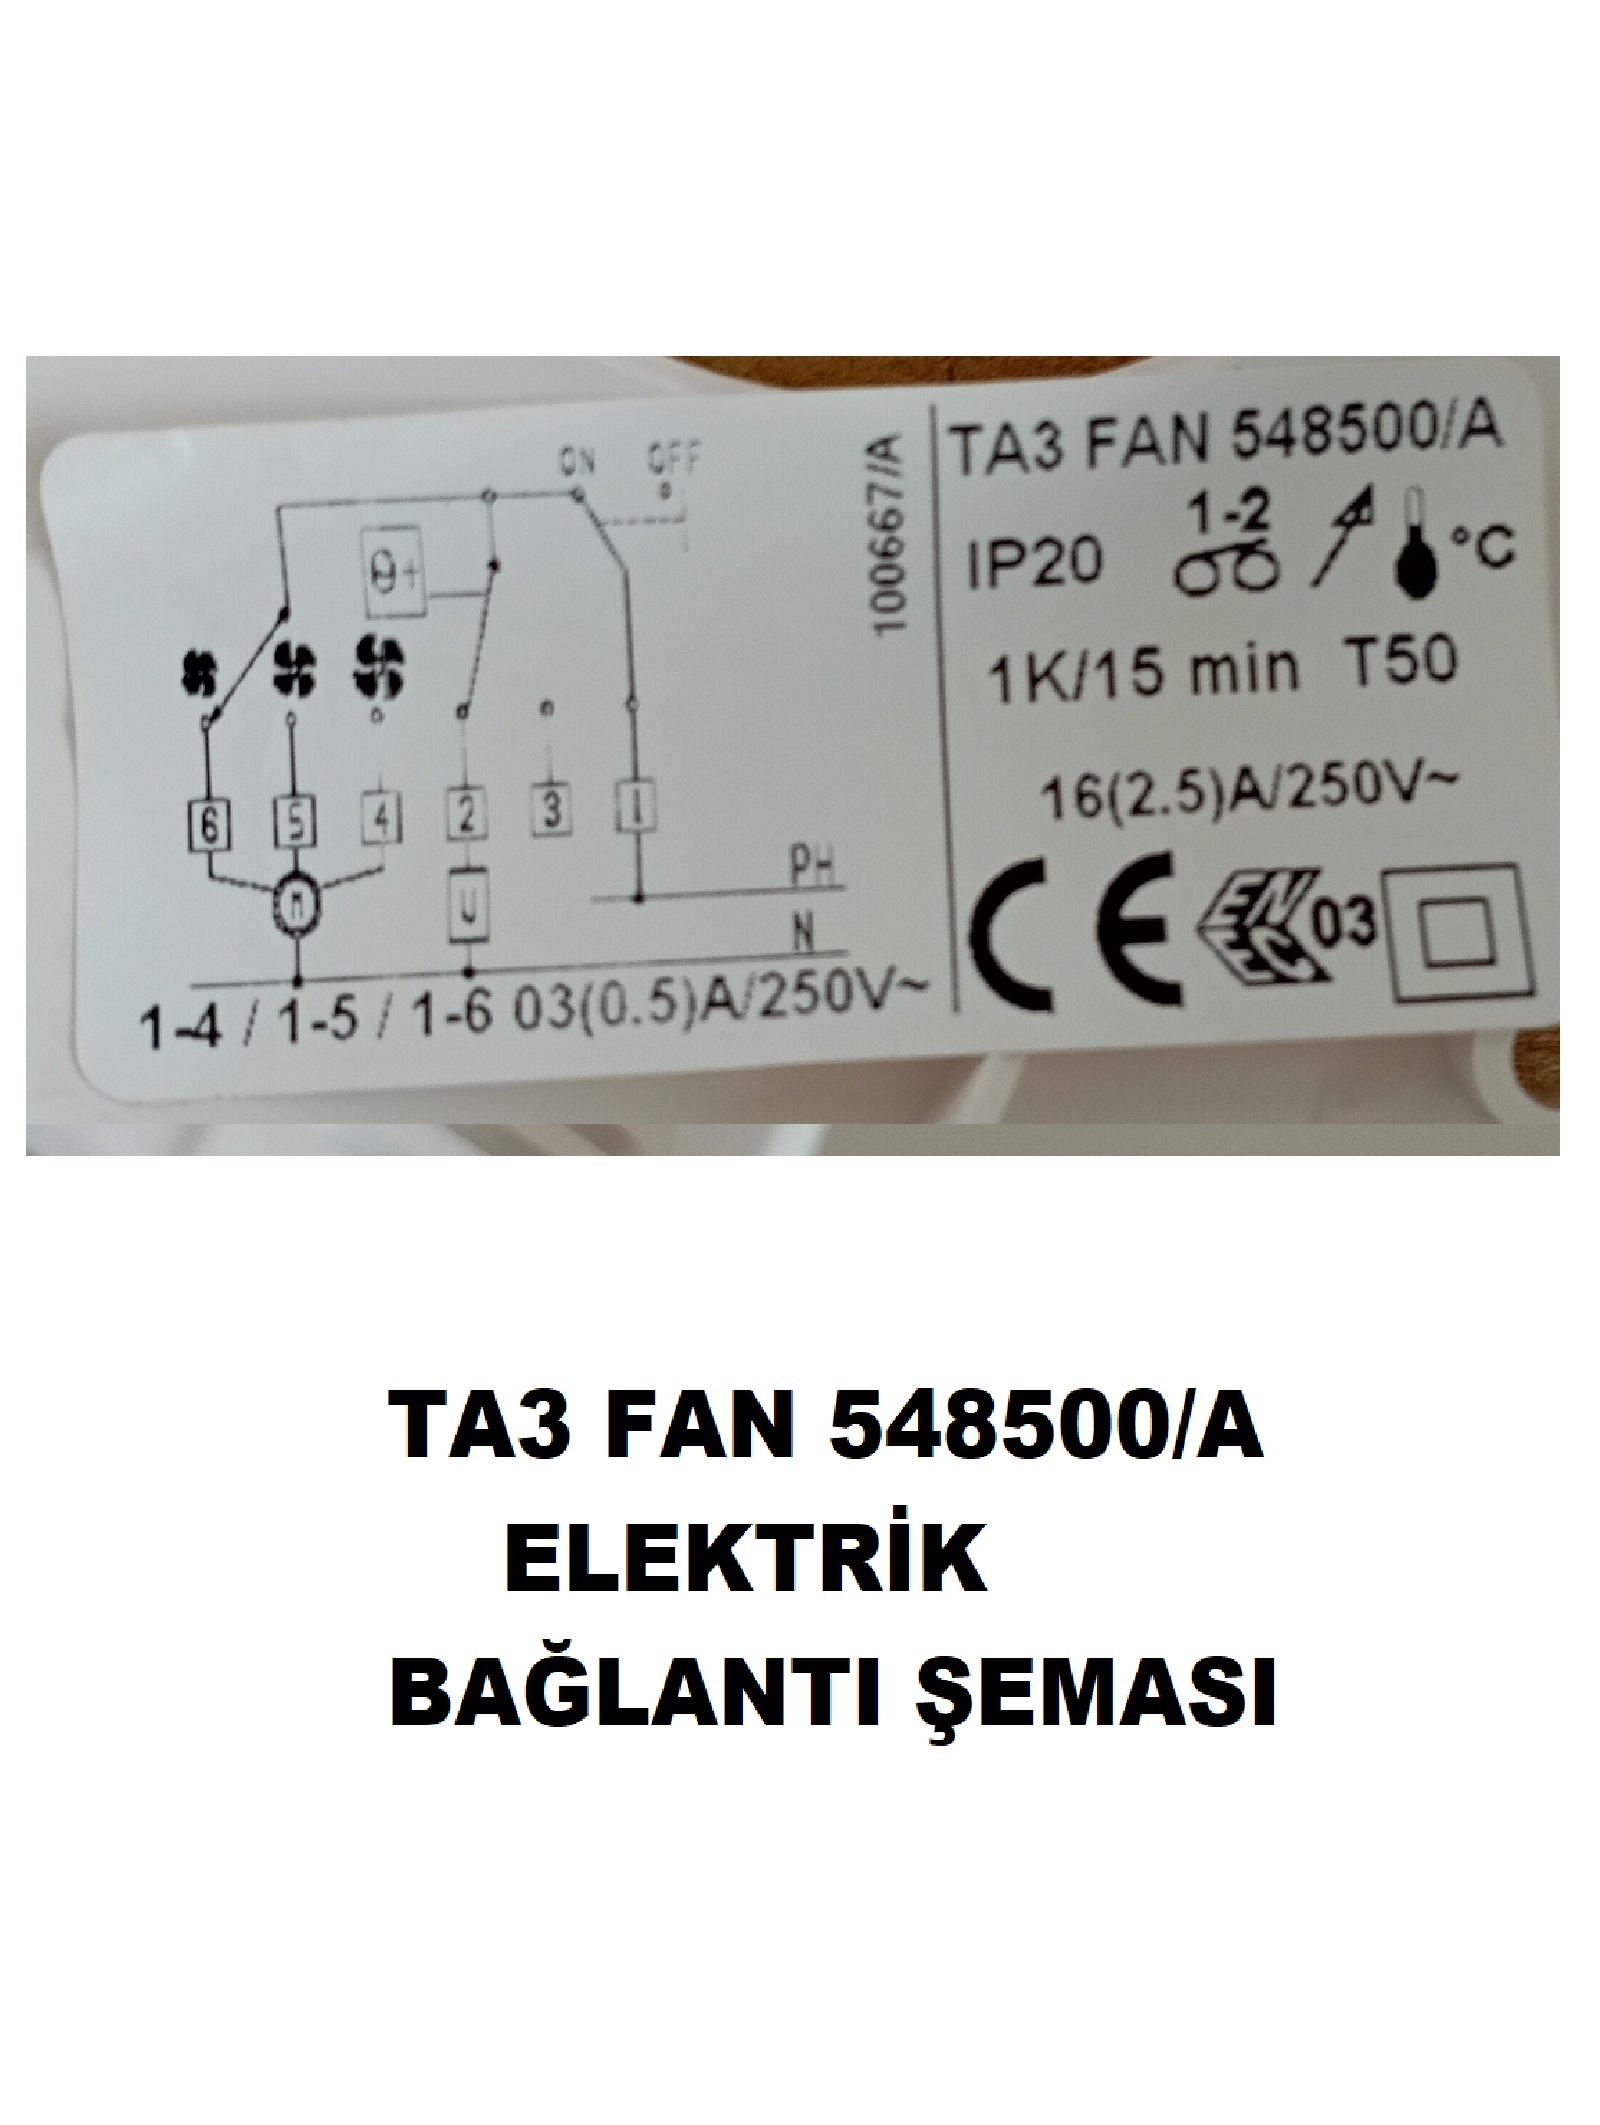 IMIT 548500/A Fan TA3 FanCoil Fankoil On/off Kablolu